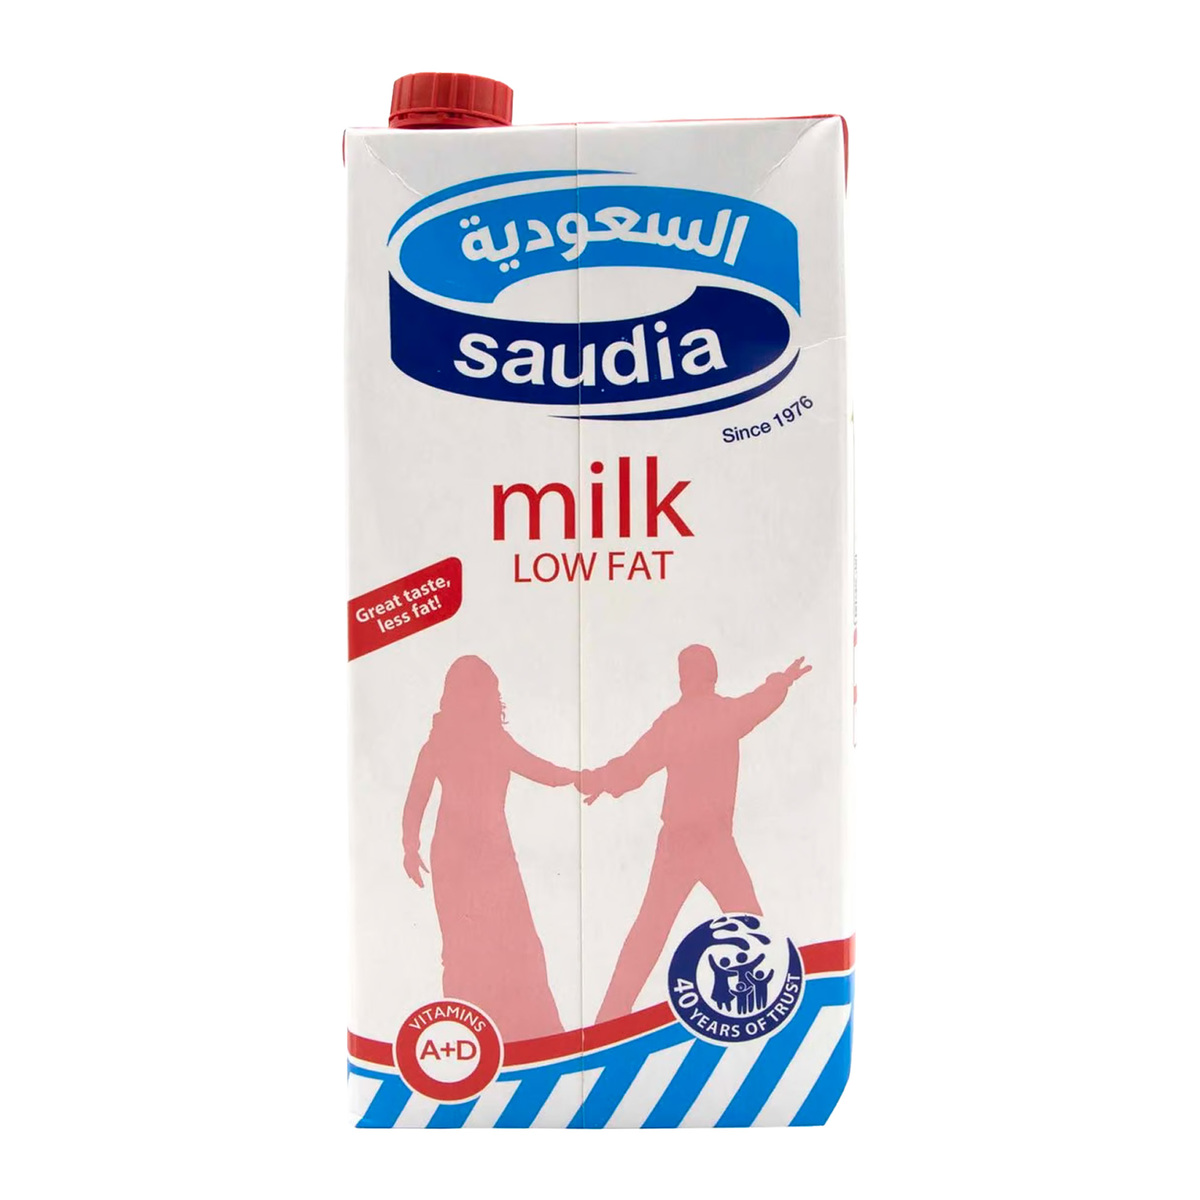 اشتري قم بشراء السعودية حليب مبستر قليل الدسم 1 لتر Online at Best Price من الموقع - من لولو هايبر ماركت UHT Milk في السعودية